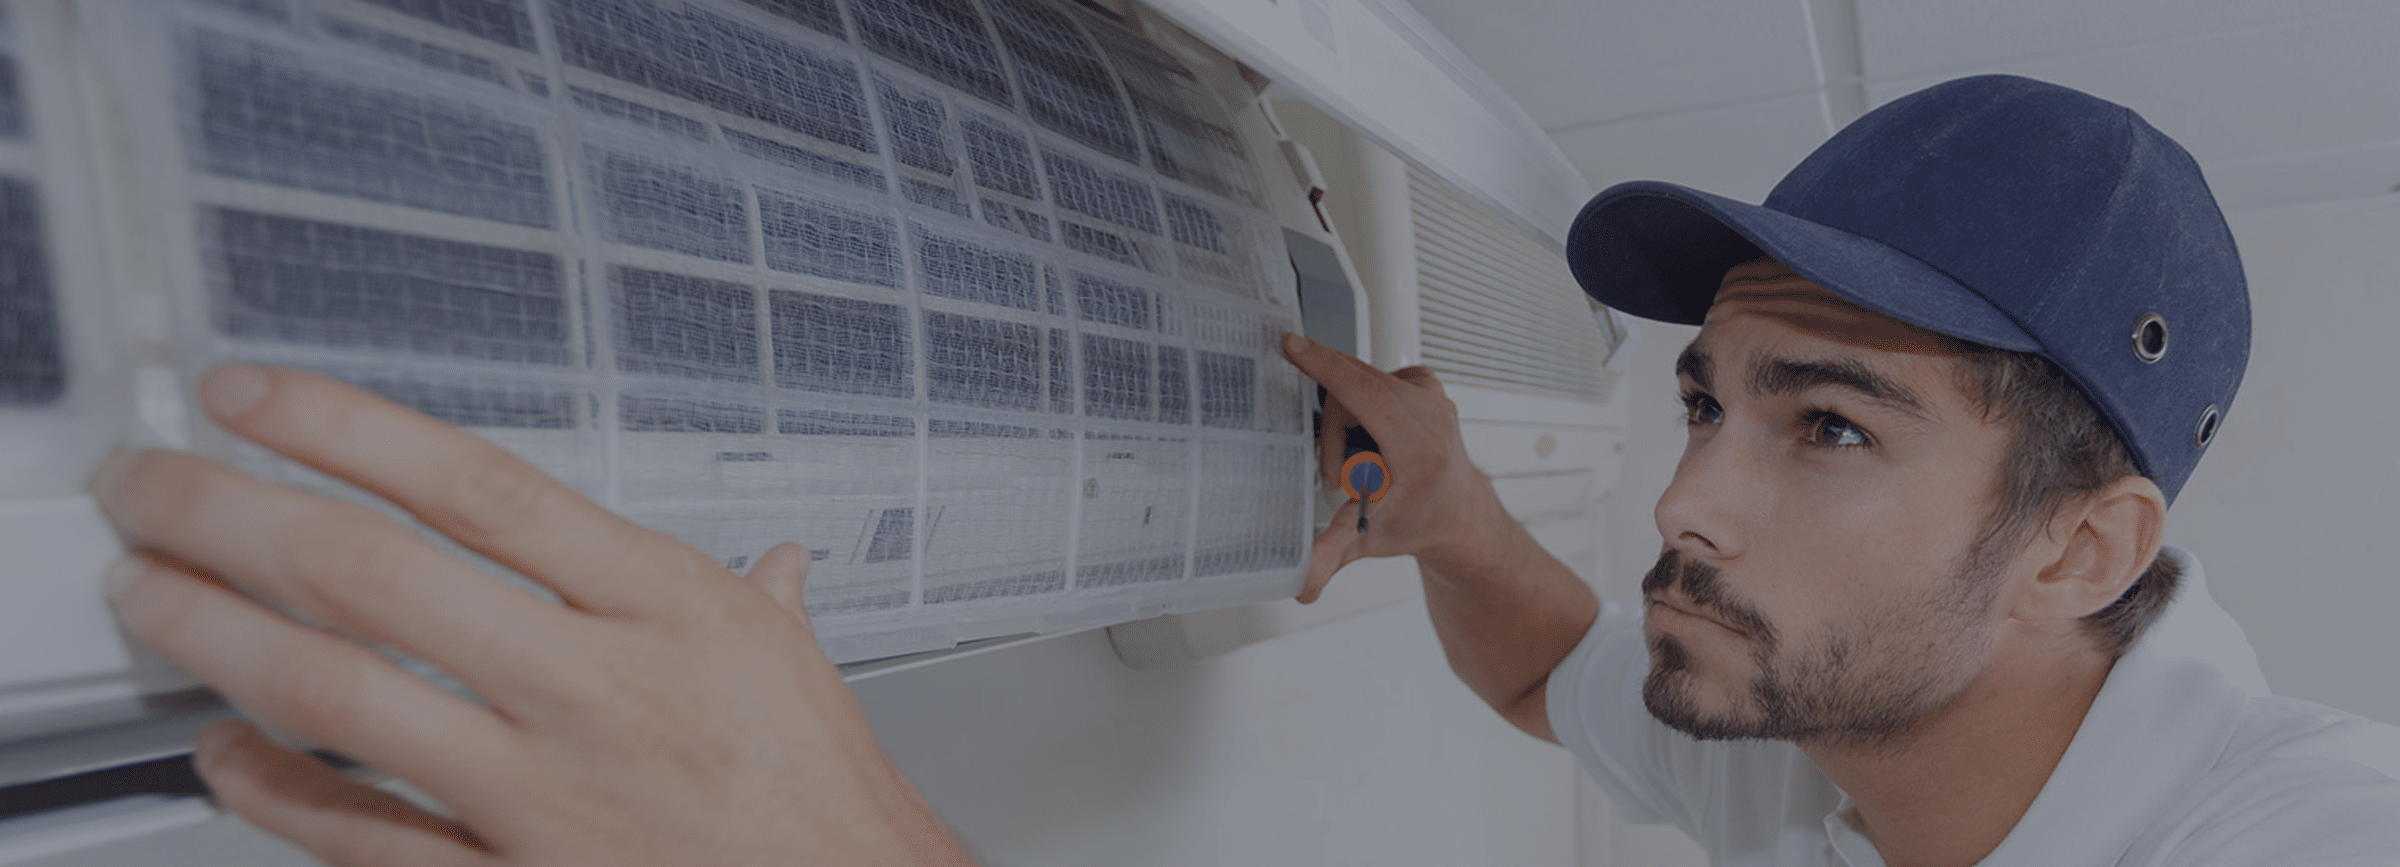 Jual Lg T06ev3 Air Conditioner Inverter Ac Split 1 2 Pk Online September 2020 Blibli Com